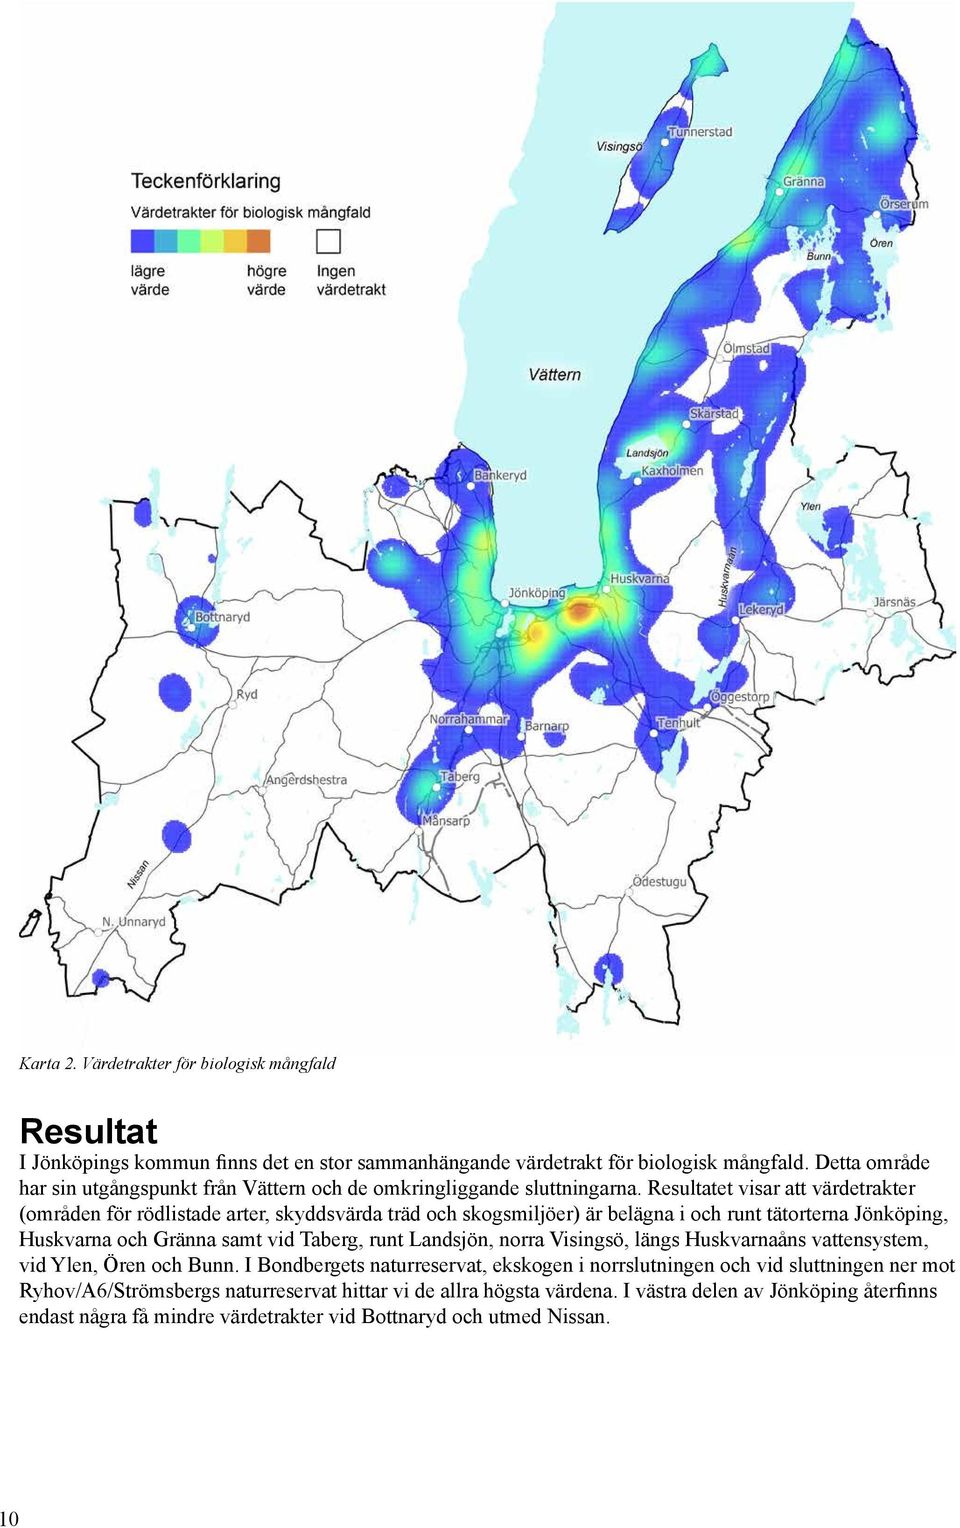 Resultatet visar att värdetrakter (områden för rödlistade arter, skyddsvärda träd och skogsmiljöer) är belägna i och runt tätorterna Jönköping, Huskvarna och Gränna samt vid Taberg, runt